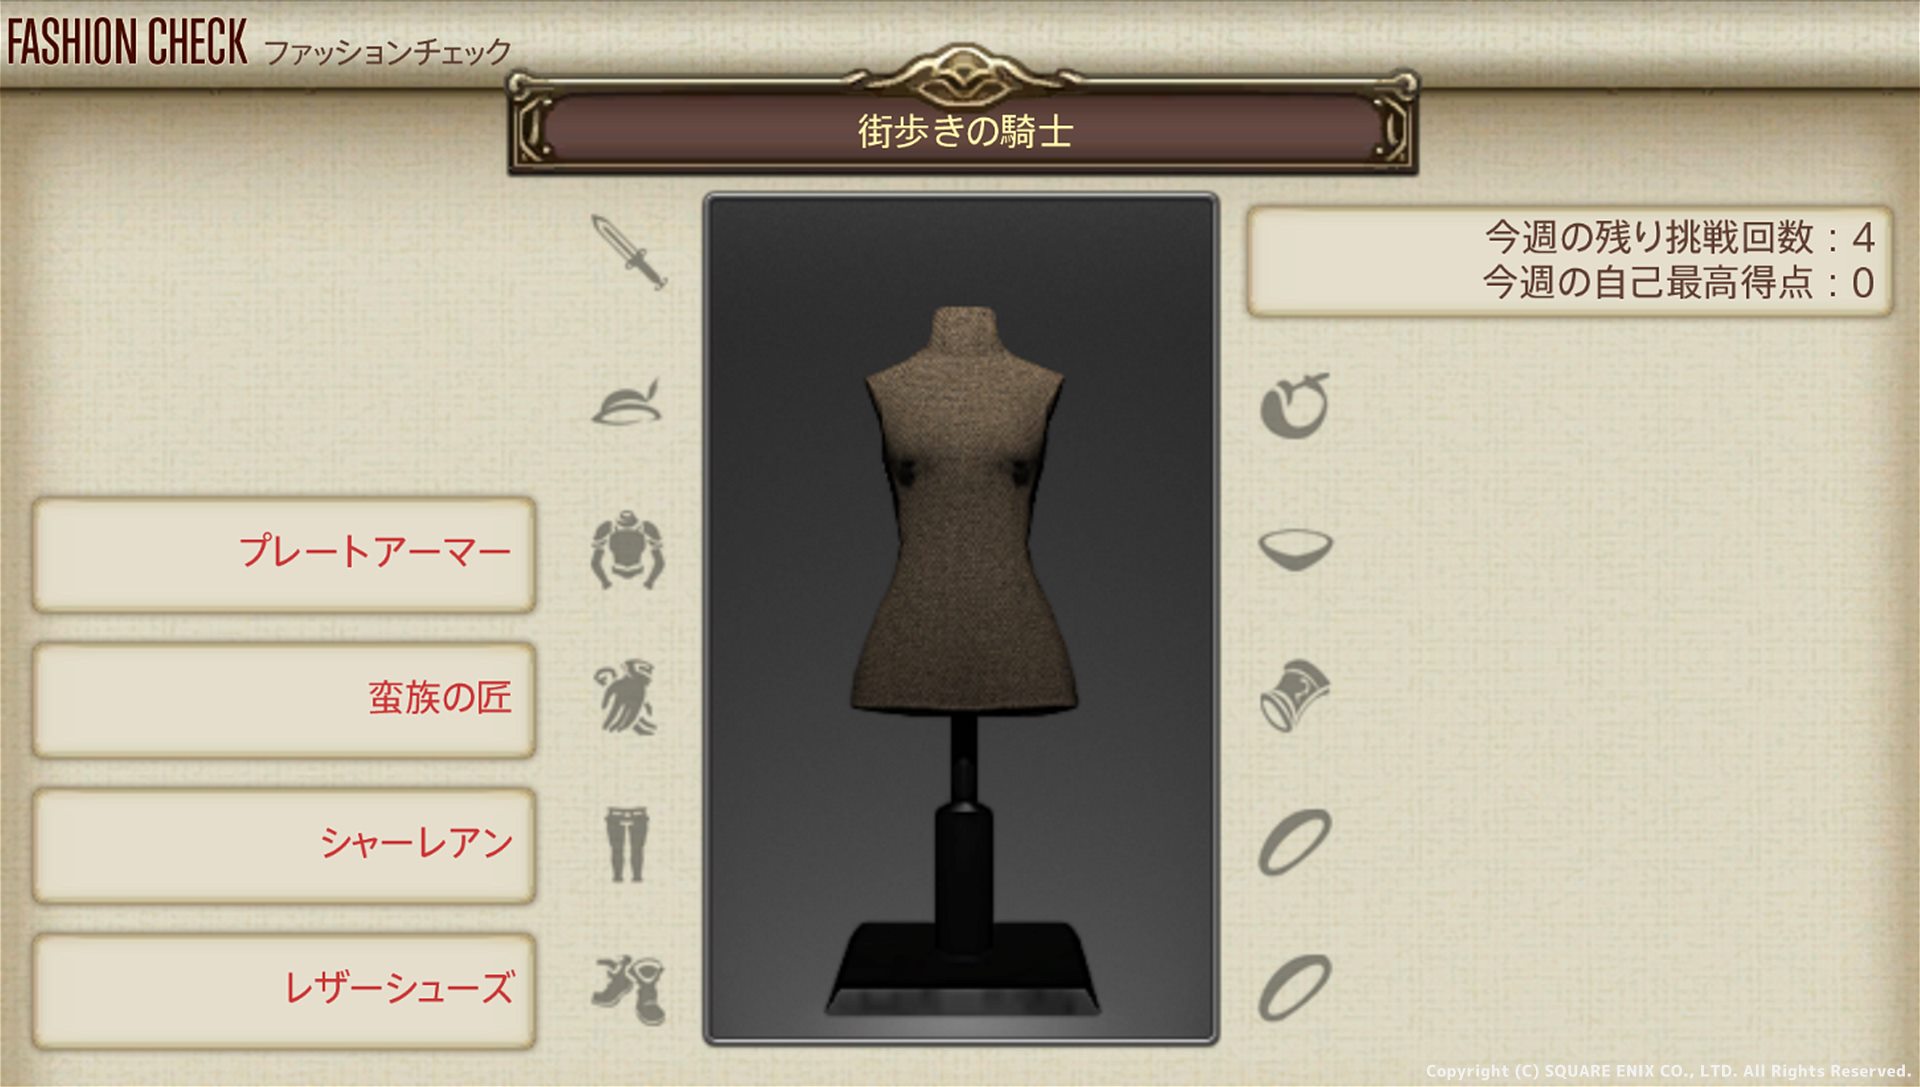 【FF14】3月28日発表のファッションチェック「街歩きの騎士」金評価・100点評価装備